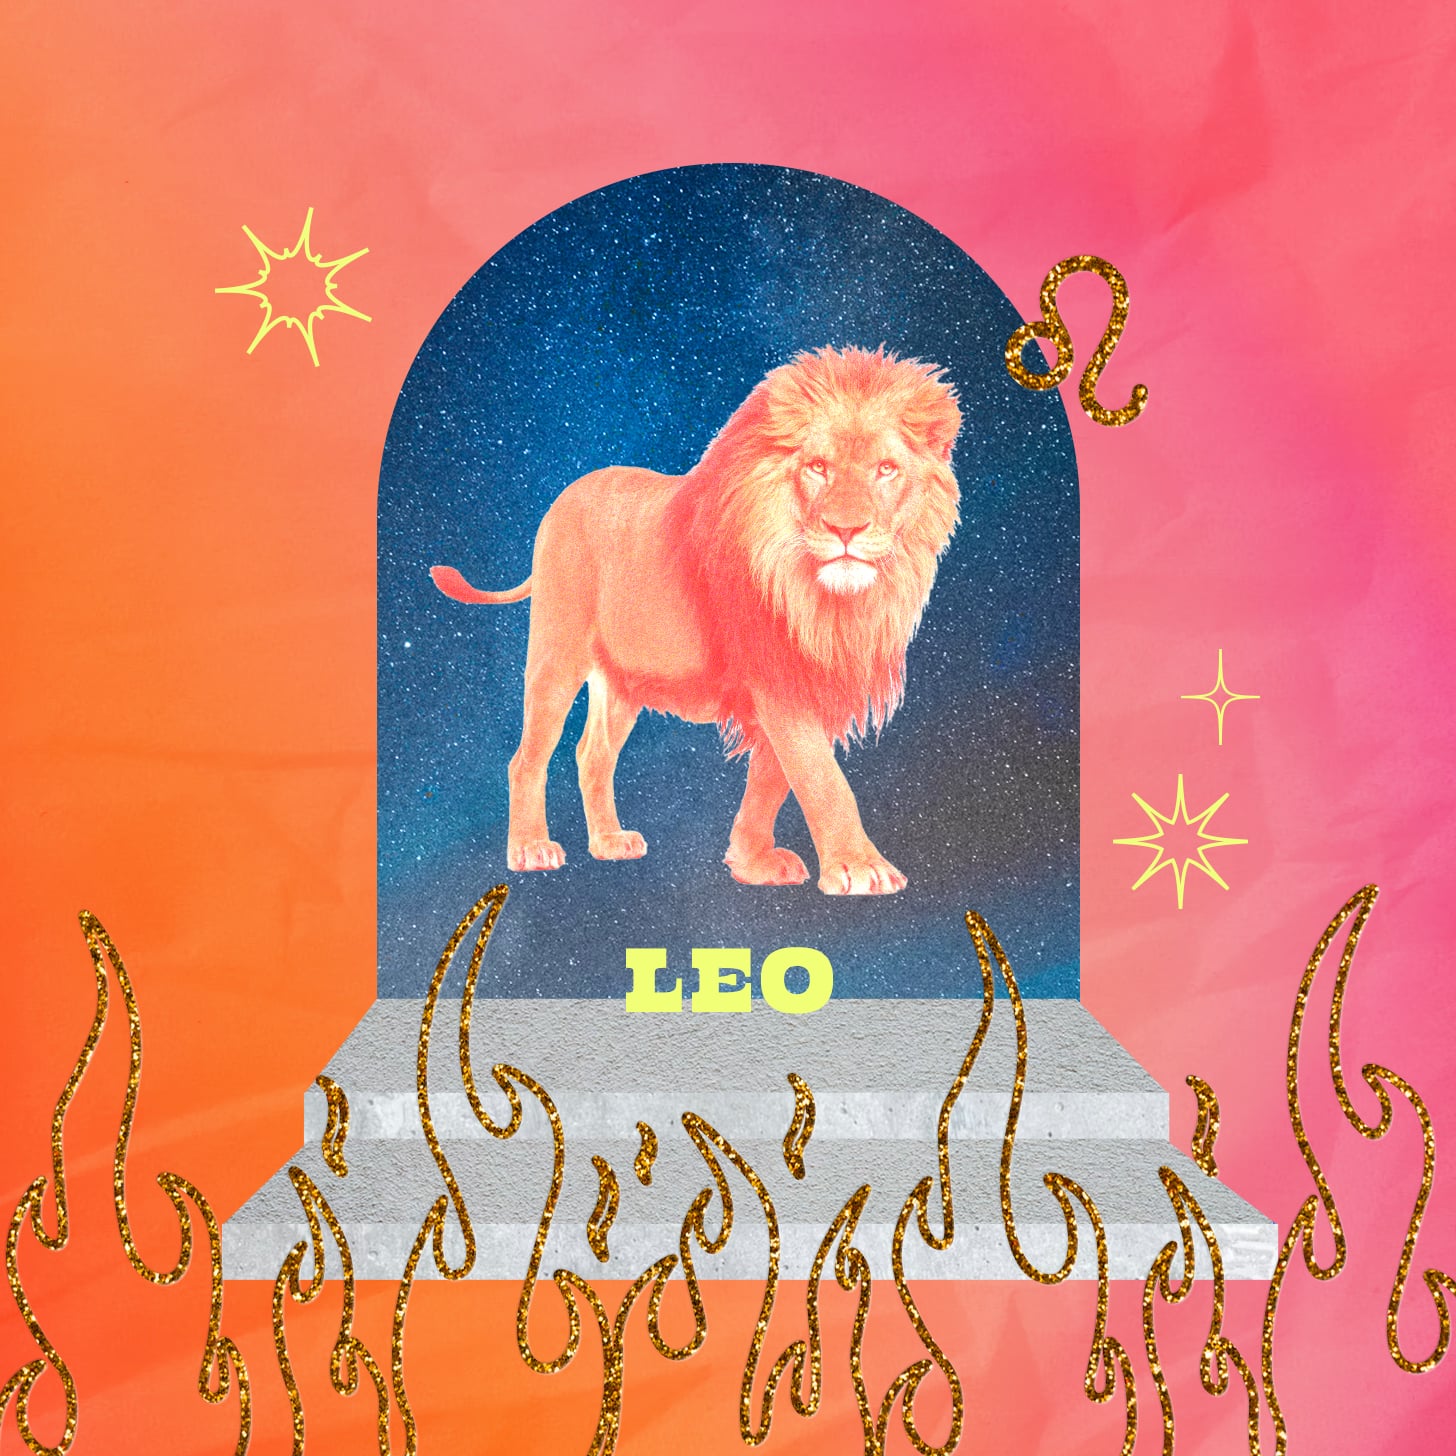 Leo weekly horoscope for September 11, 2022